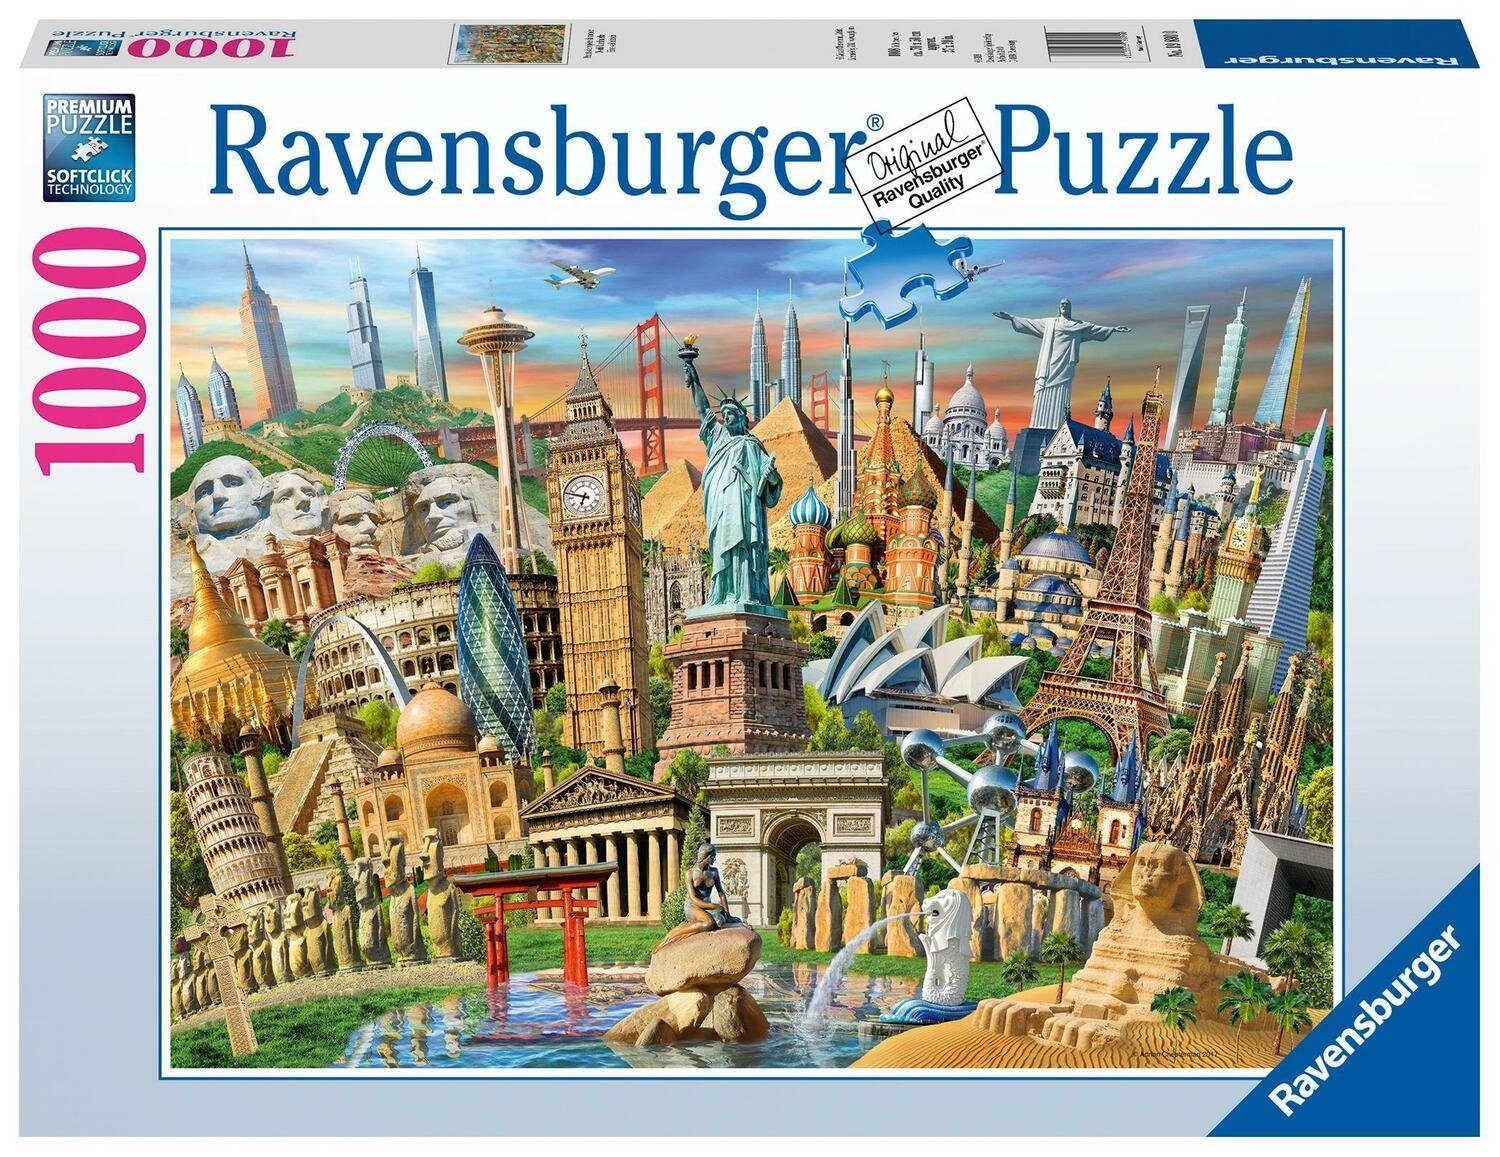 Ravensburger Puzzle Sehenswürdigkeiten weltweit. Puzzle 1000 teile, 1000 Puzzleteile